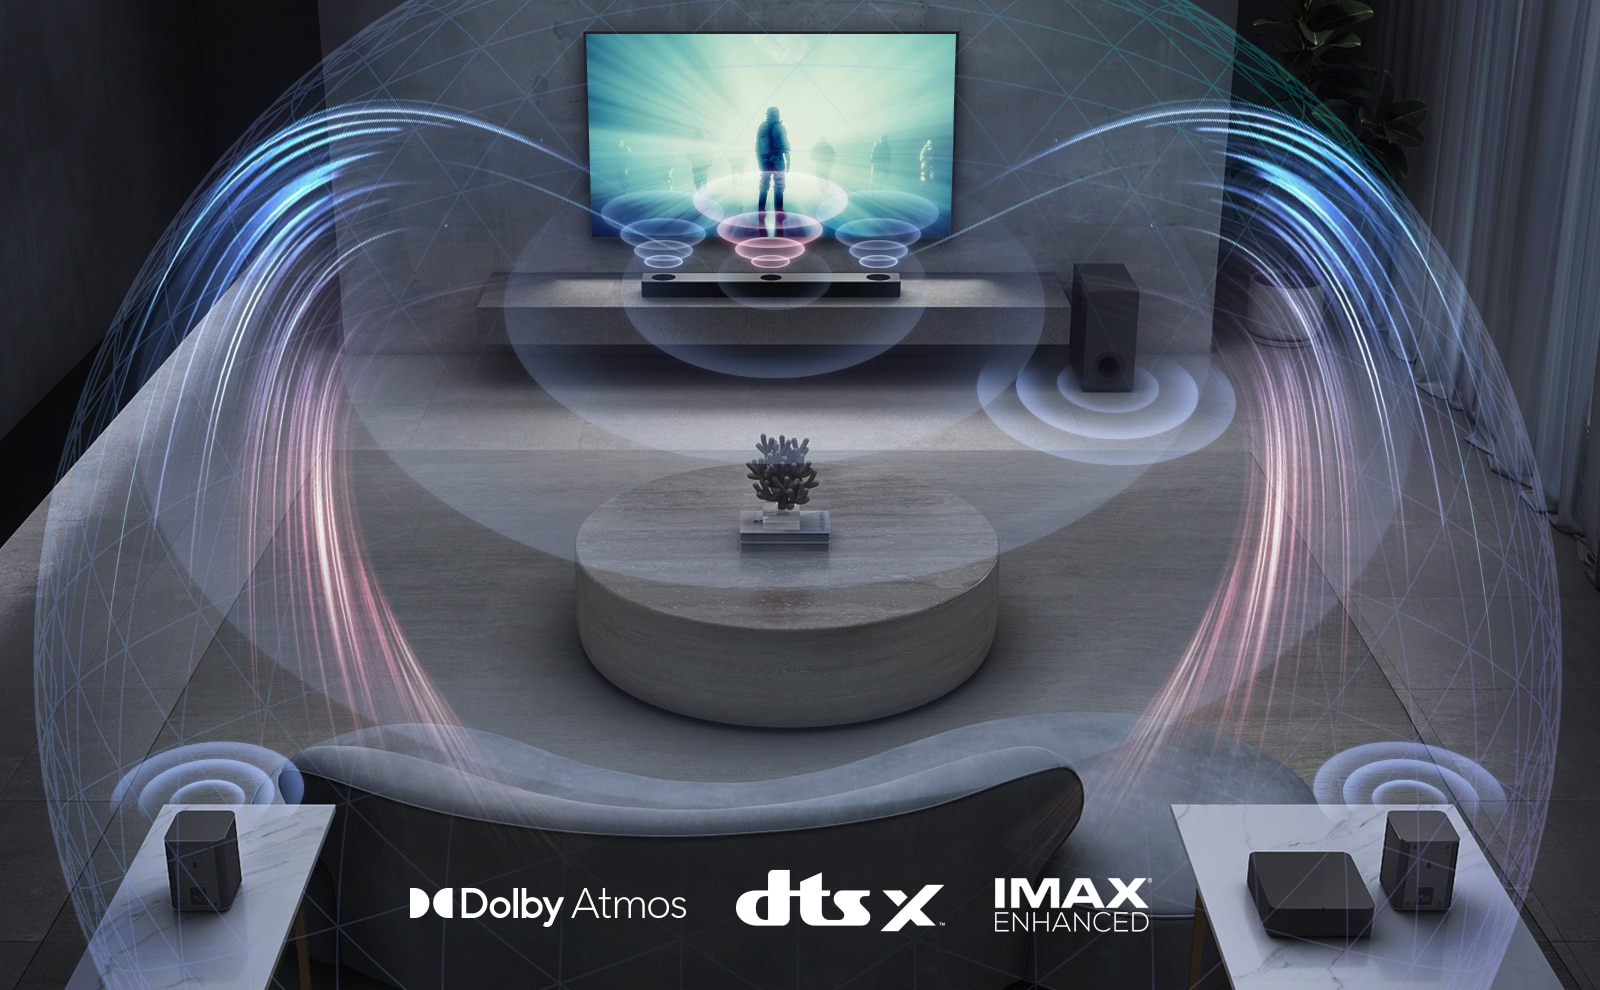 در اتاق نشیمن، تلویزیون ال‌جی روی دیوار نصب شده است. فیلم سینمایی روی صفحه تلویزیون در حال پخش است. ساندبار ال‌جی درست در پایین تلویزیون روی قفسه خاکستری رنگ به همراه ساب ووفر در کنار آن قرار گرفته است. مجموعه‌ای از 2 اسپیکر عقب در پشت اتاق نشیمن قرار دارد. تجسم گرافیکی جلوه‌های صوتی از هر اسپیکر بیرون می‌آید. لوگوی DTS:X ،Dolby Atmos و IMAX Enhanced در پایین و وسط تصویر مشاهده می‌شود.